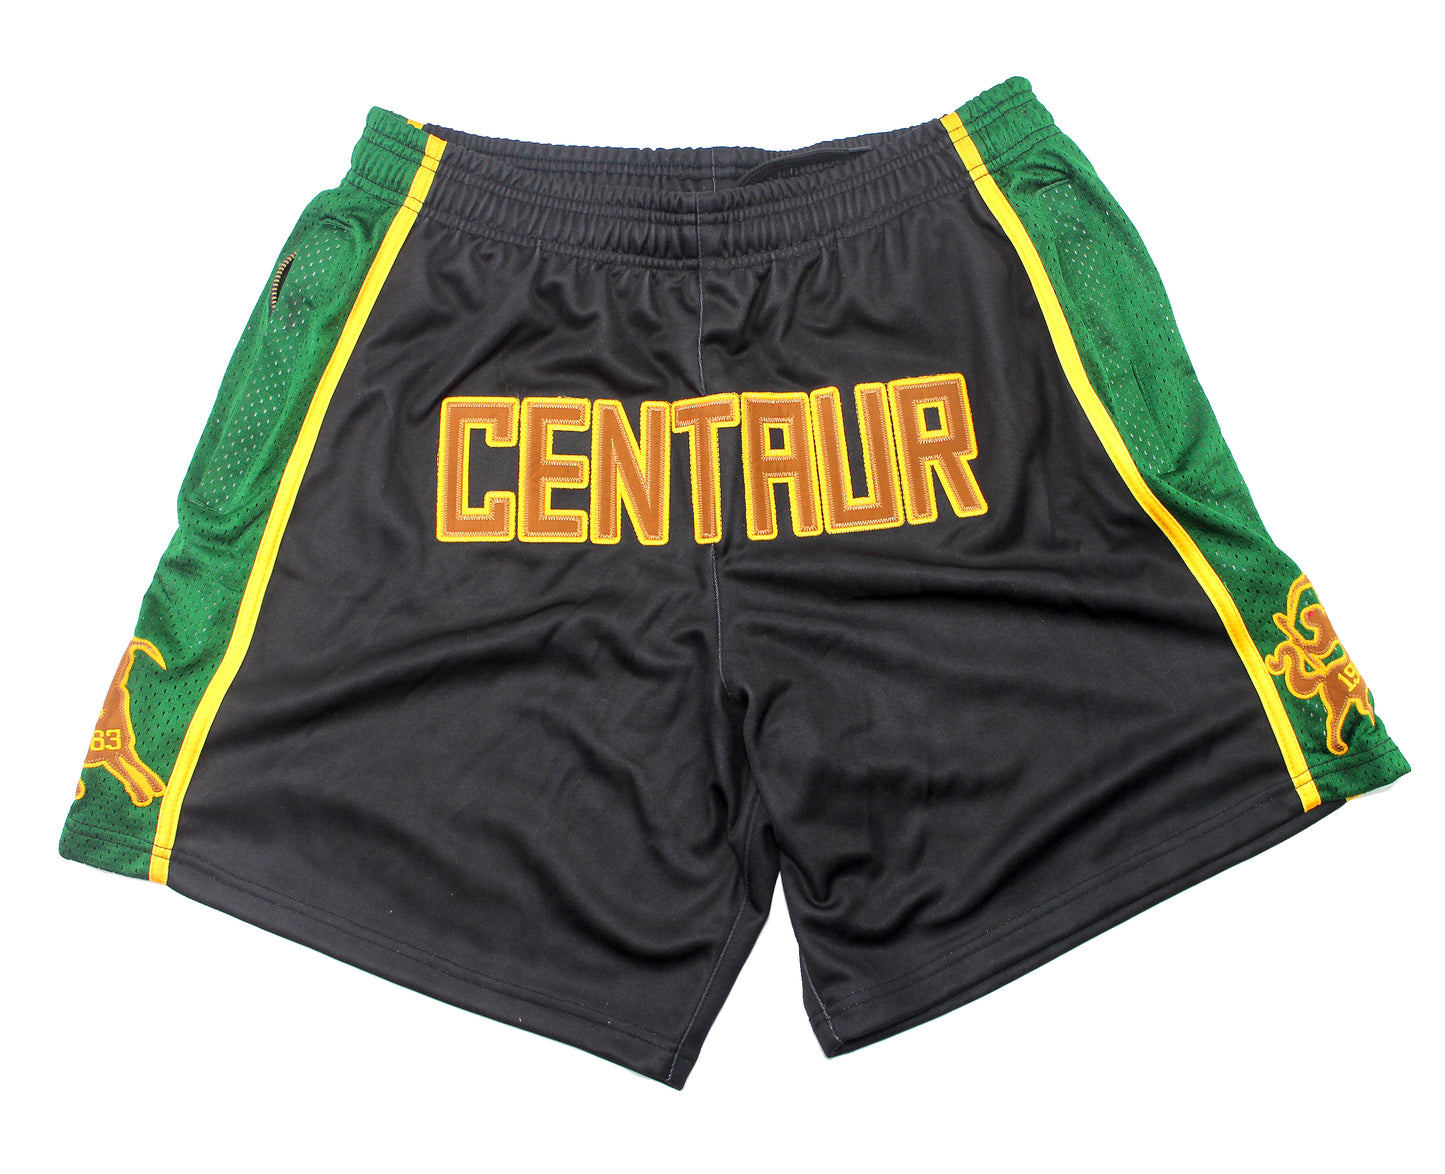 Black "Centaur" Shorts